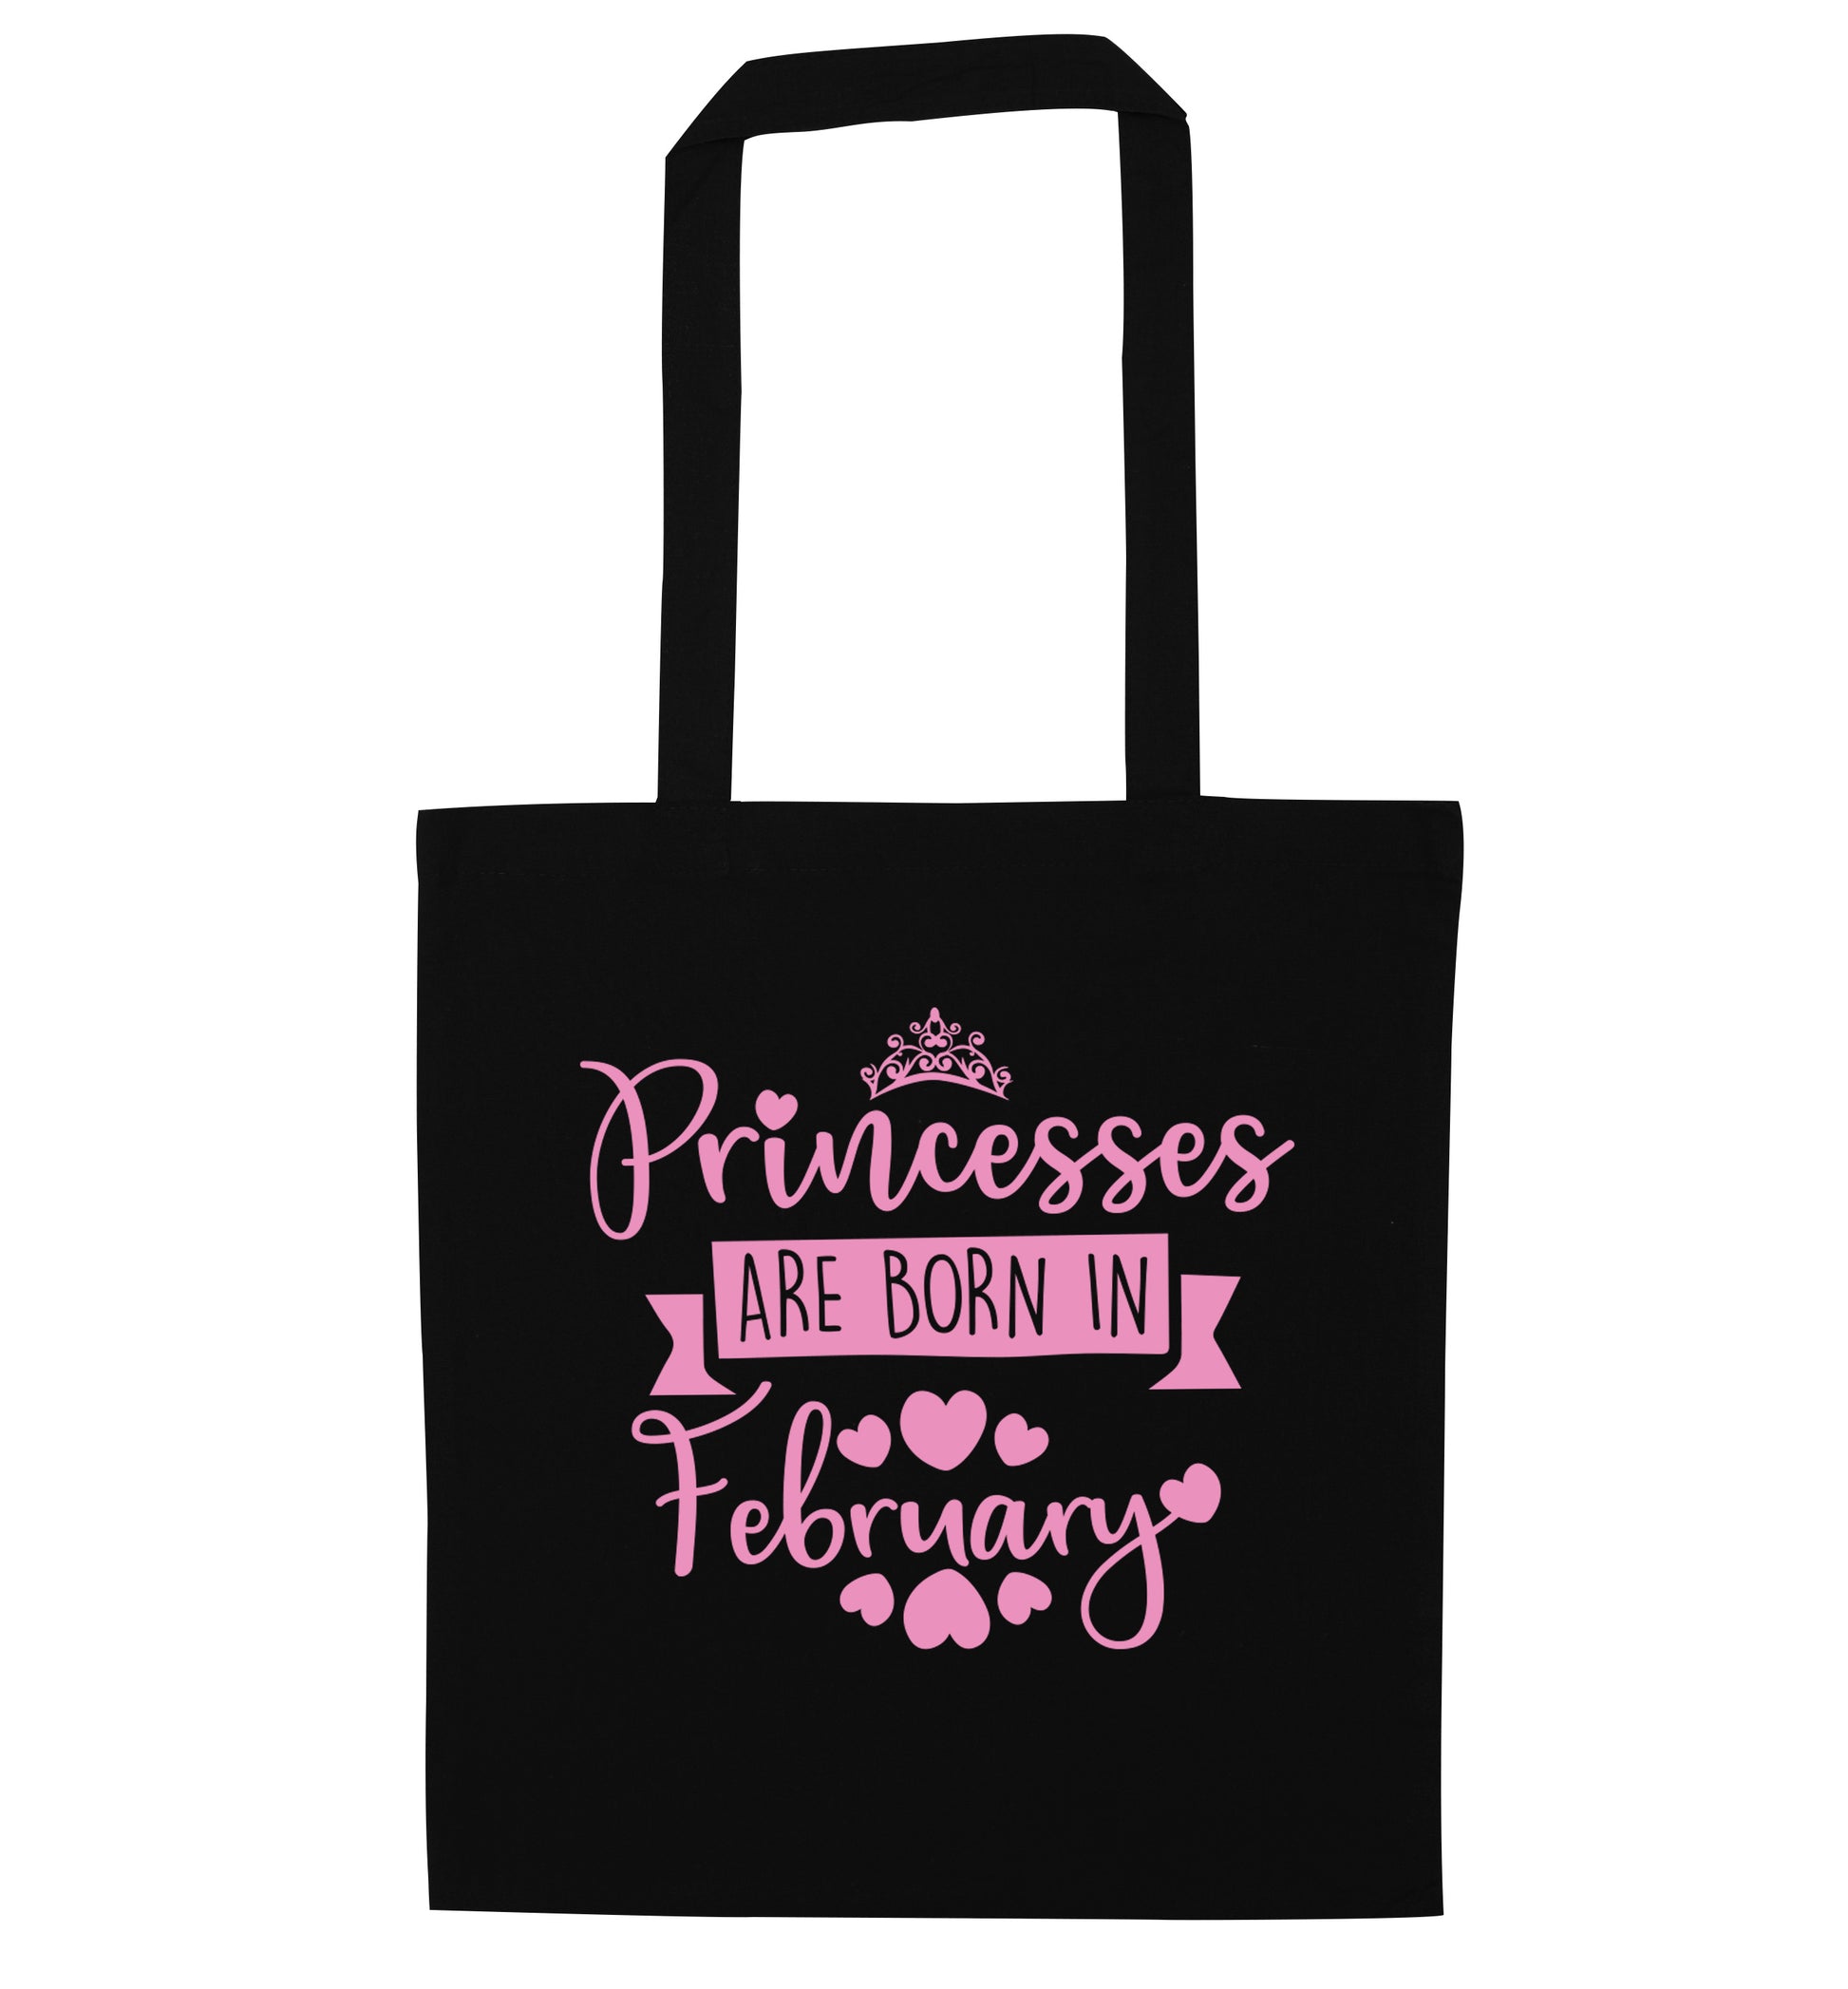 Princesses are born in February black tote bag